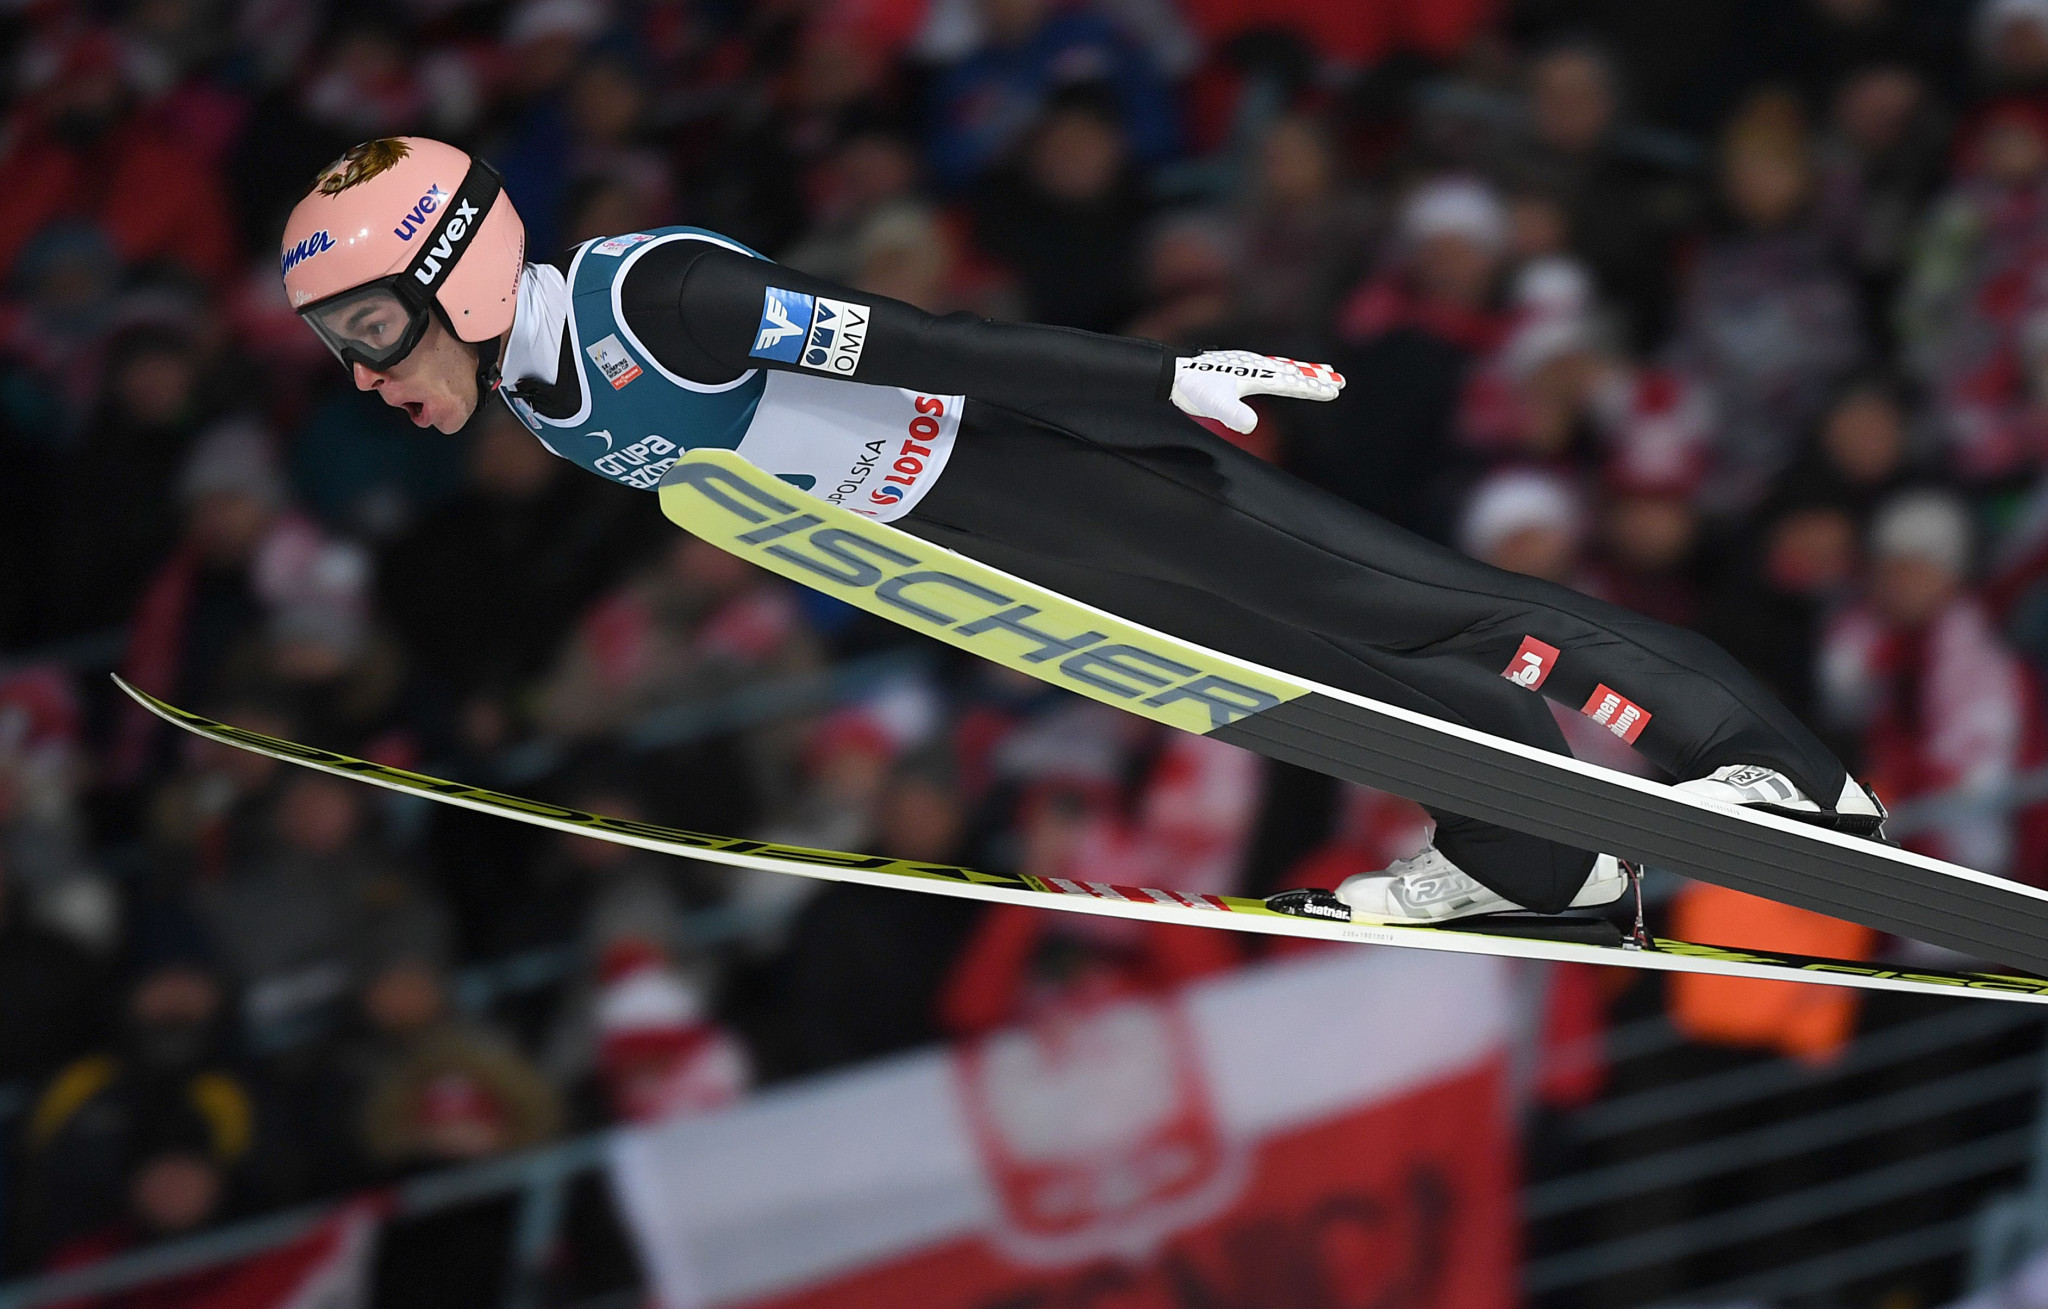 Austria's Stefan Kraft was triumphant in the men's event in Zakopane ©Getty Images